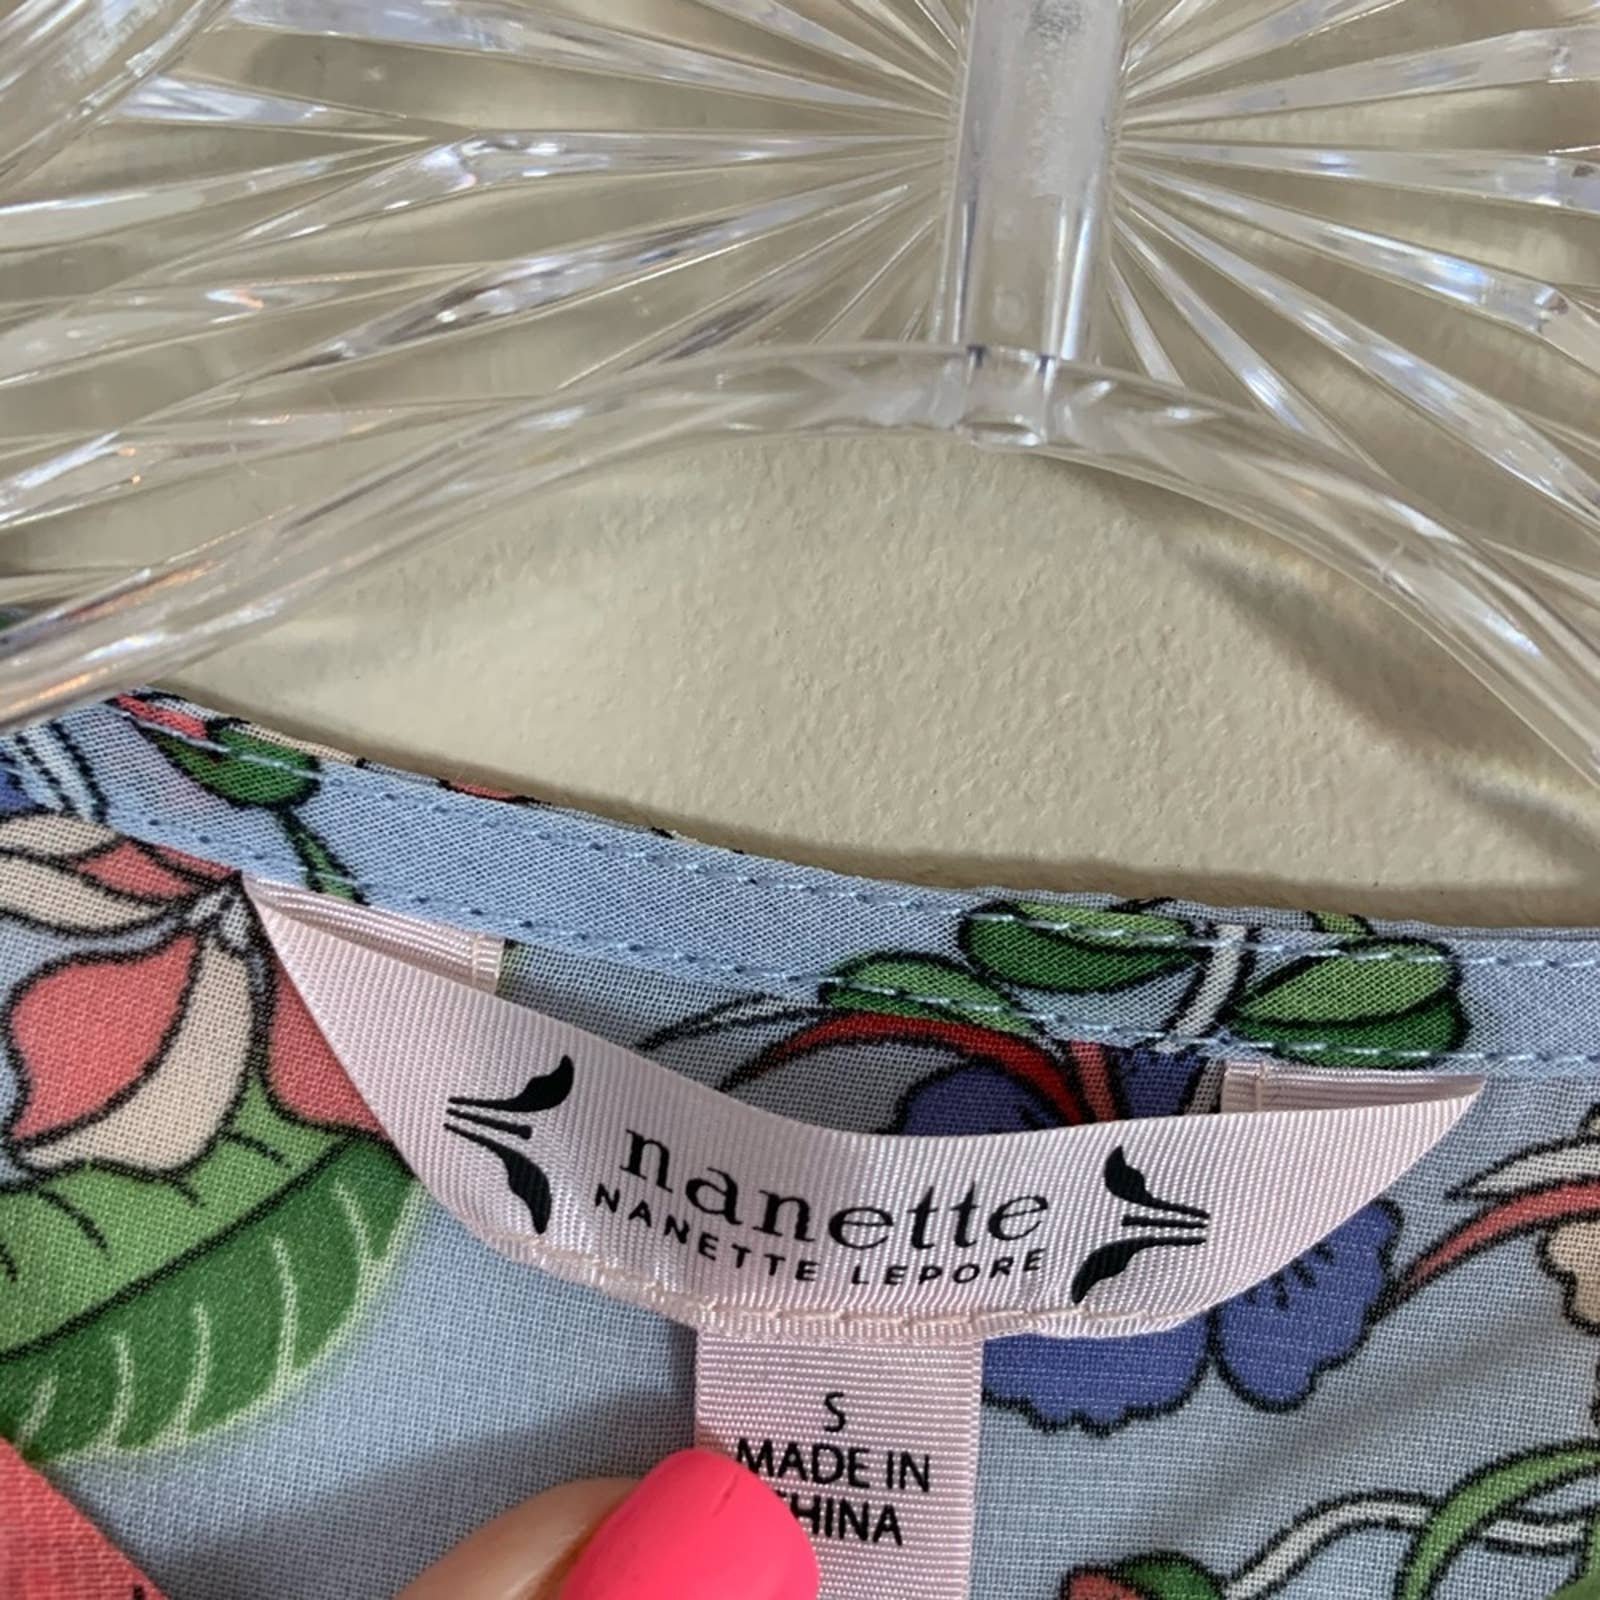 Buy Nanette Lepore 3/4 Ruffle Sleeve Blouse hMd3S7lRN hot sale